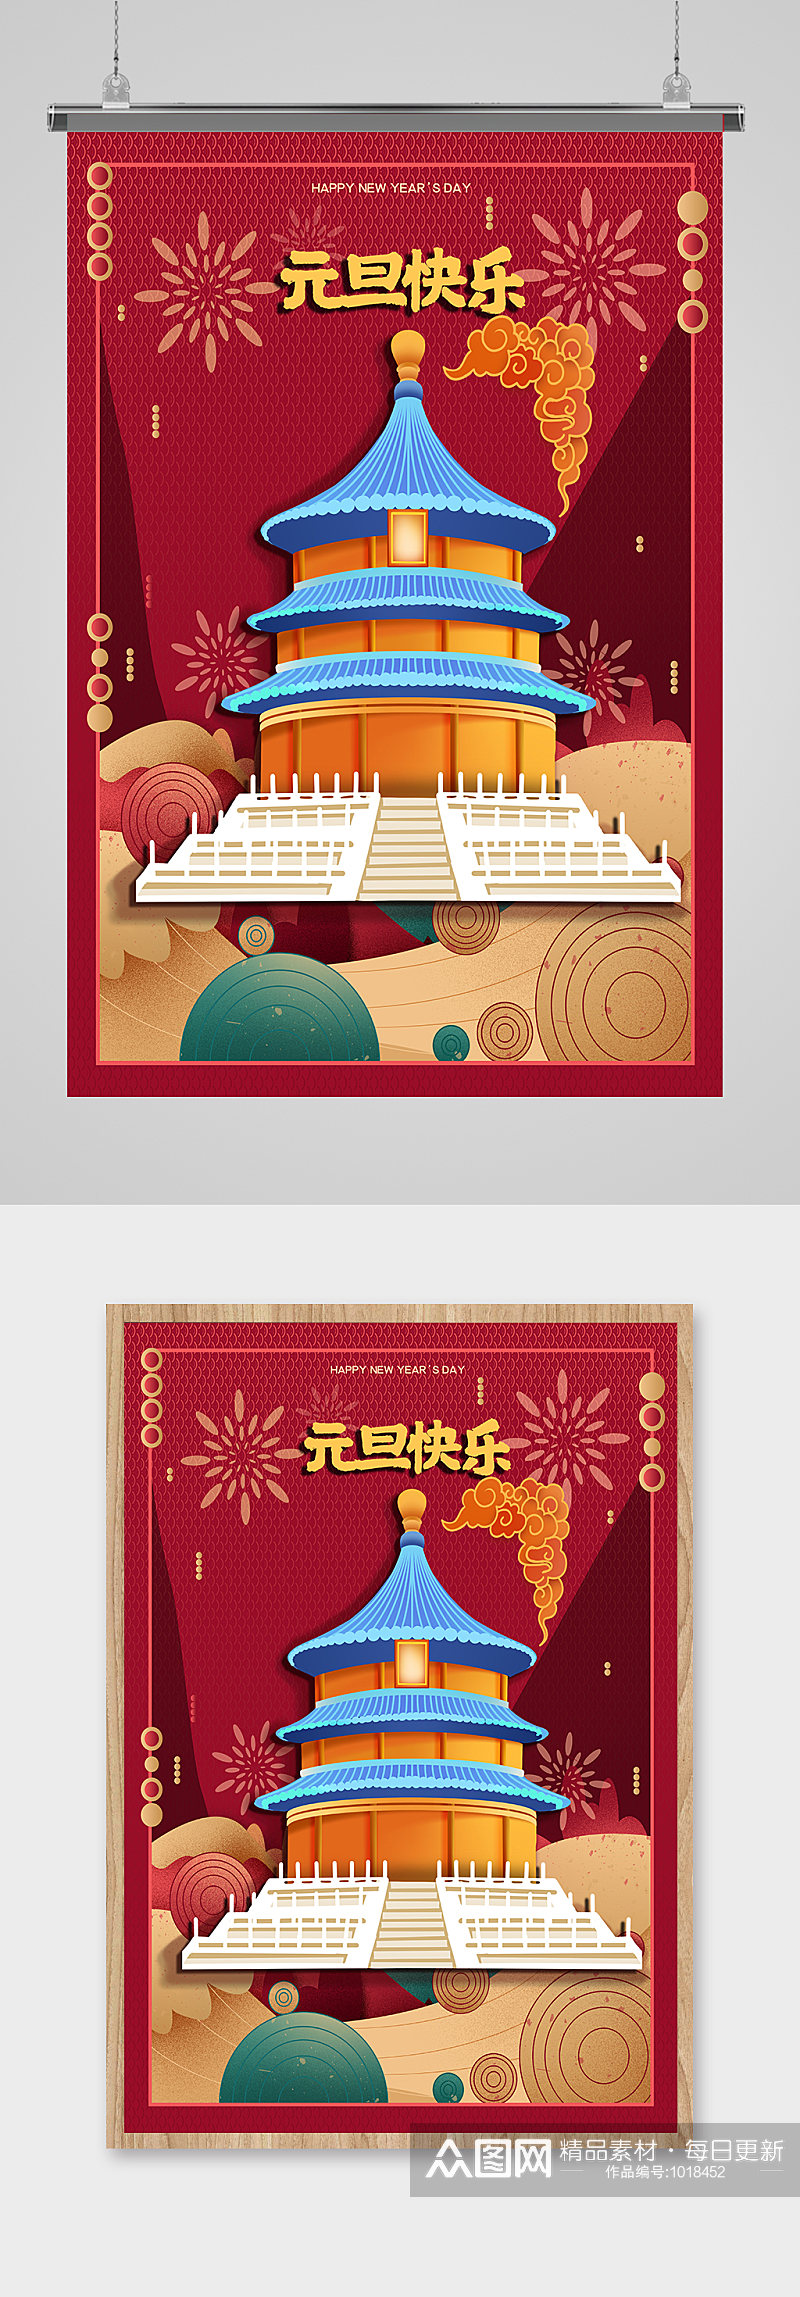 中国风传统古典新年元旦春节喜庆迎春海报素材